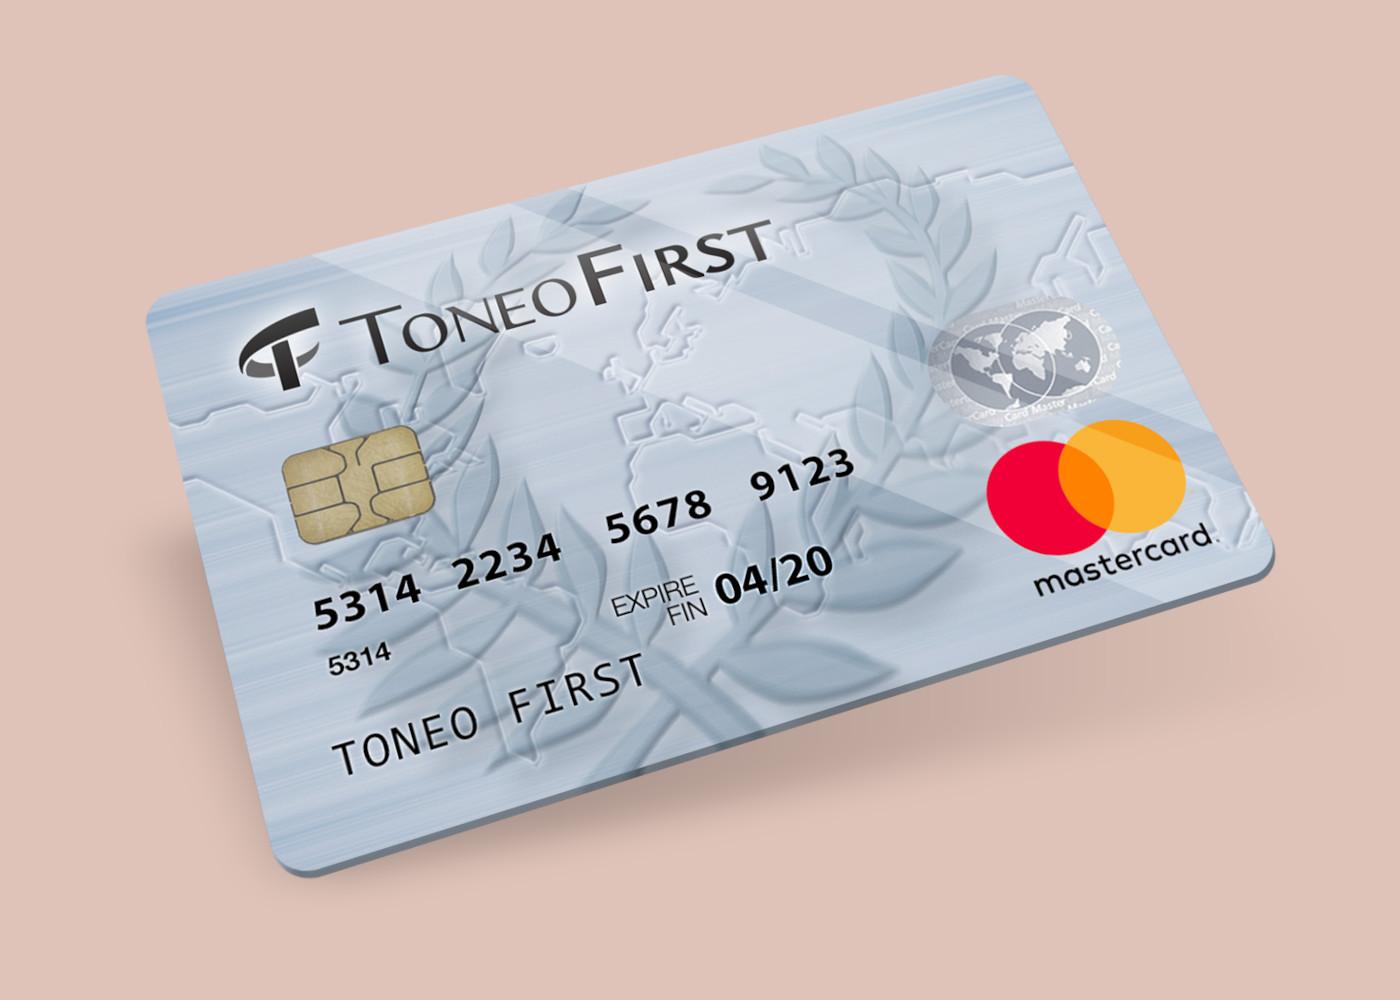 Toneo First Mastercard €15 Gift Card EU, 19.63$